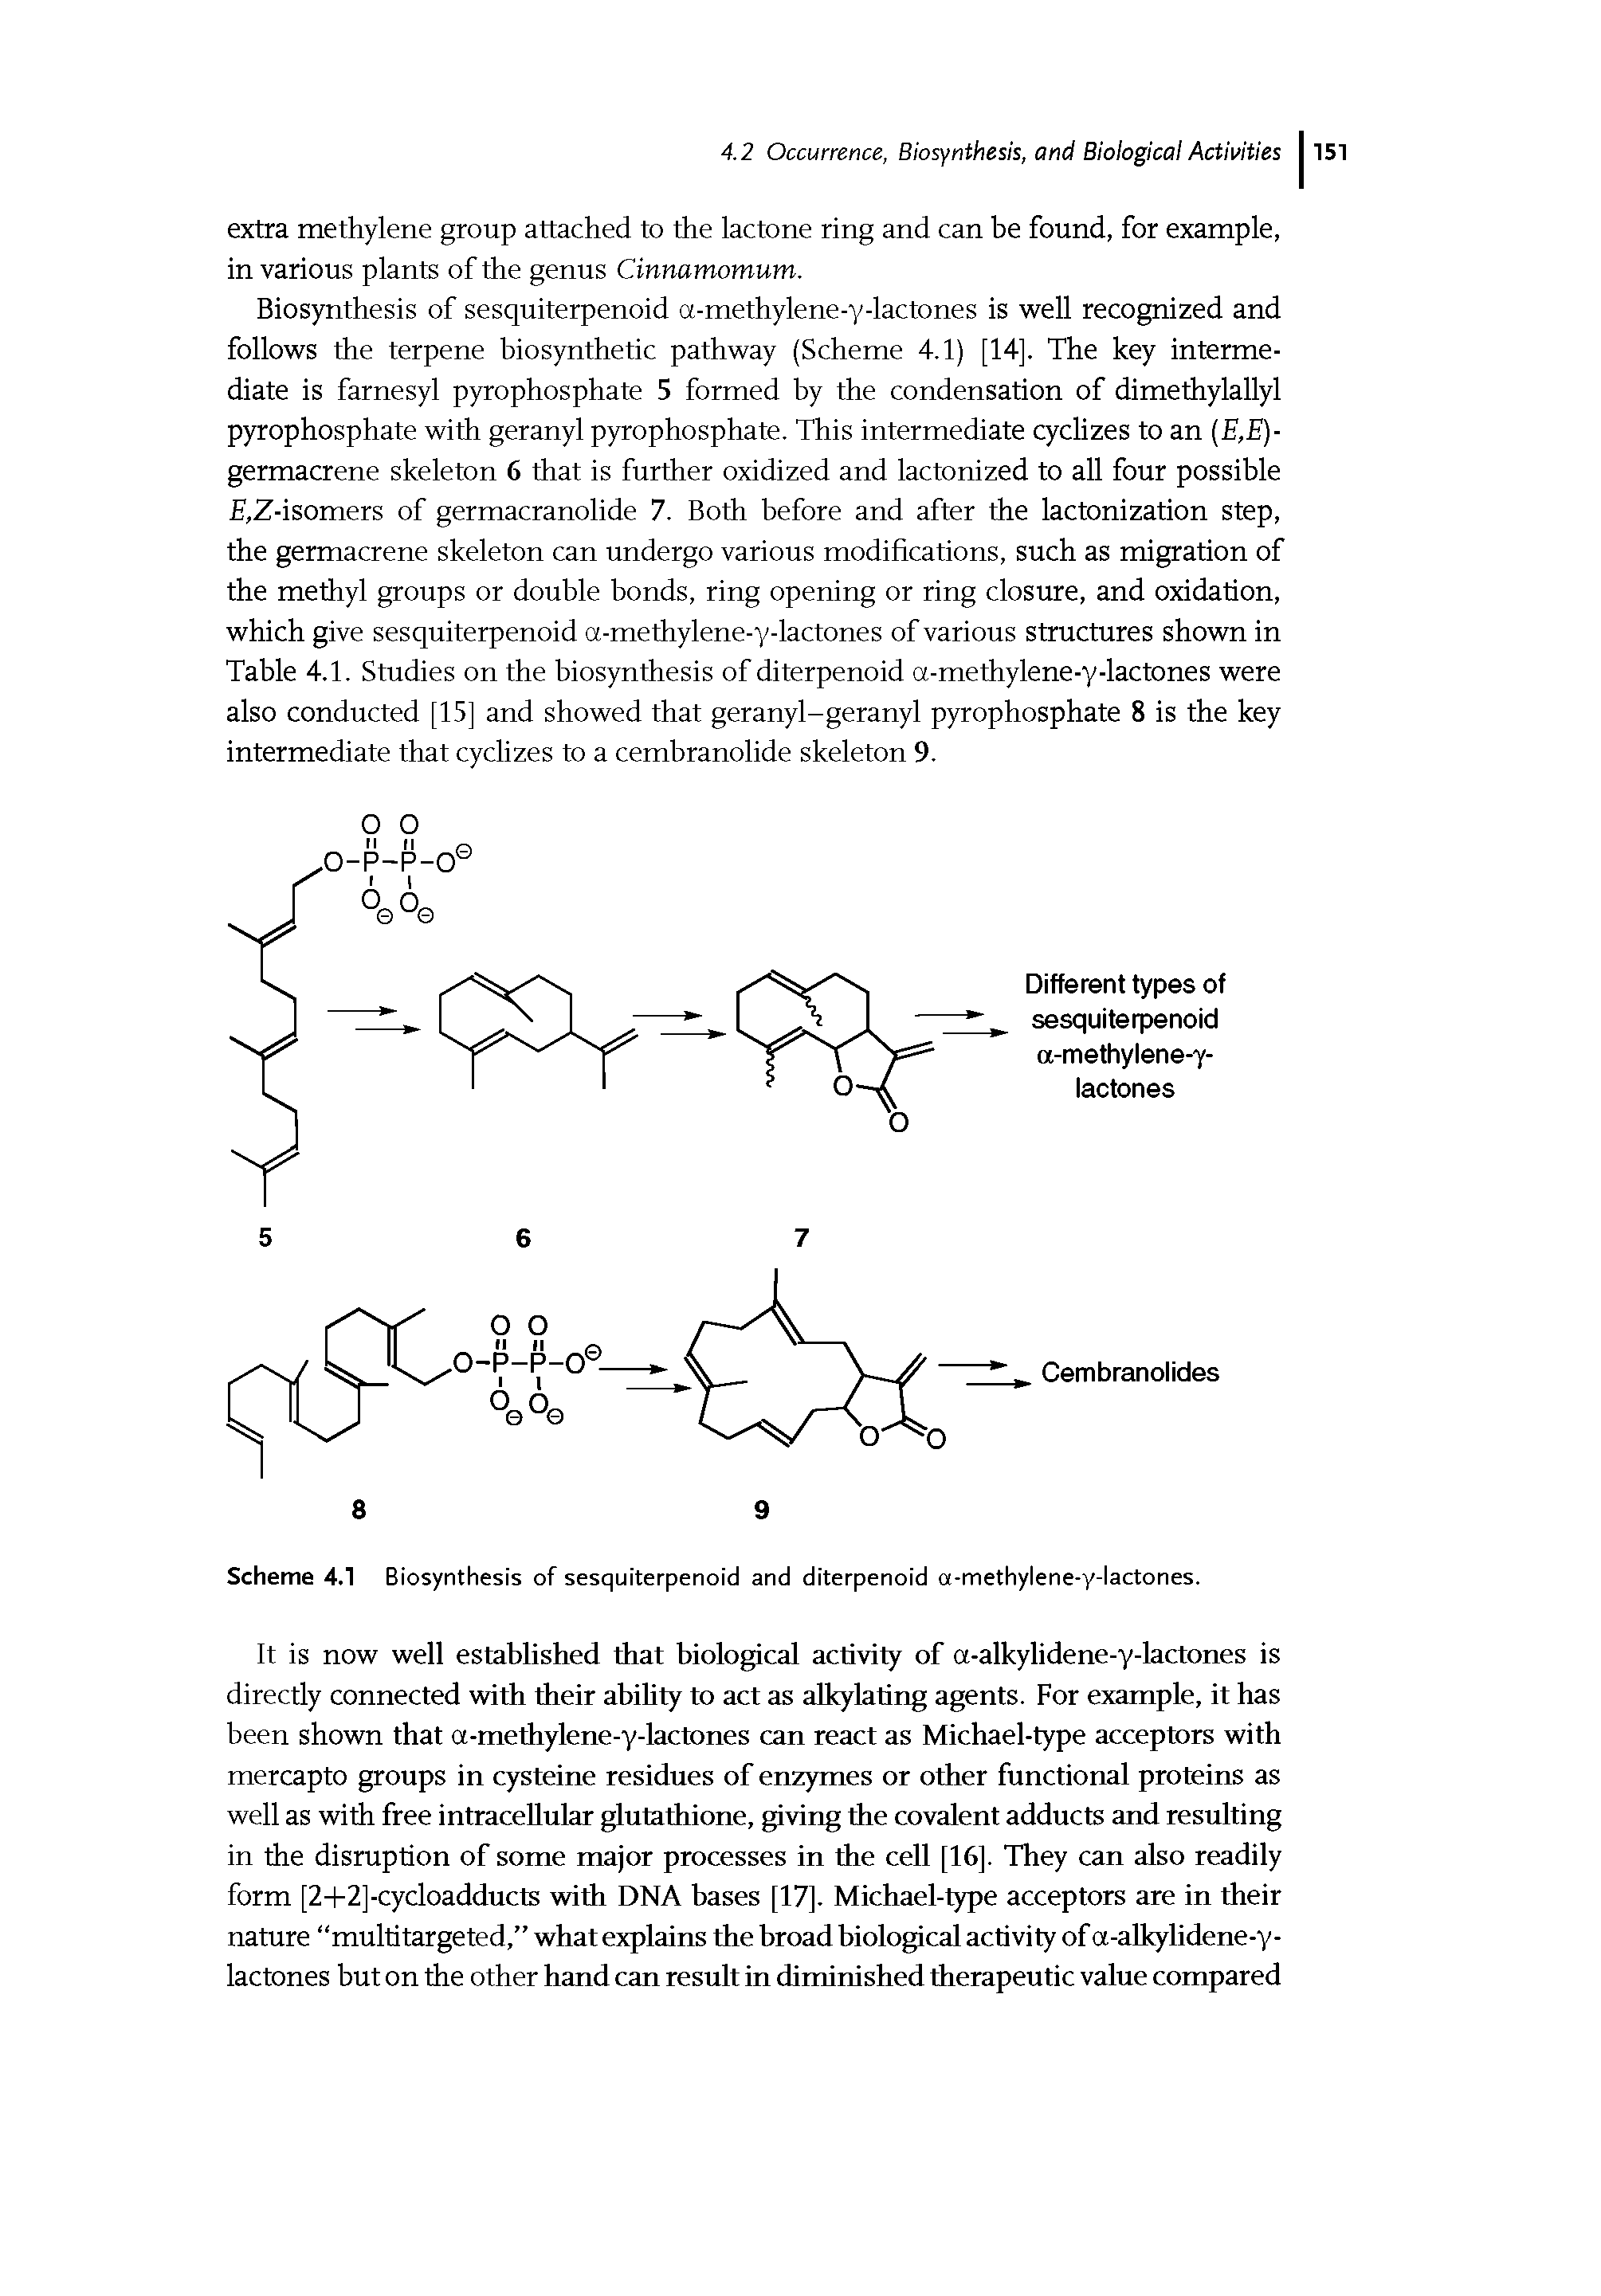 Scheme 4.1 Biosynthesis of sesquiterpenoid and diterpenoid a-methylene-y-lactones.